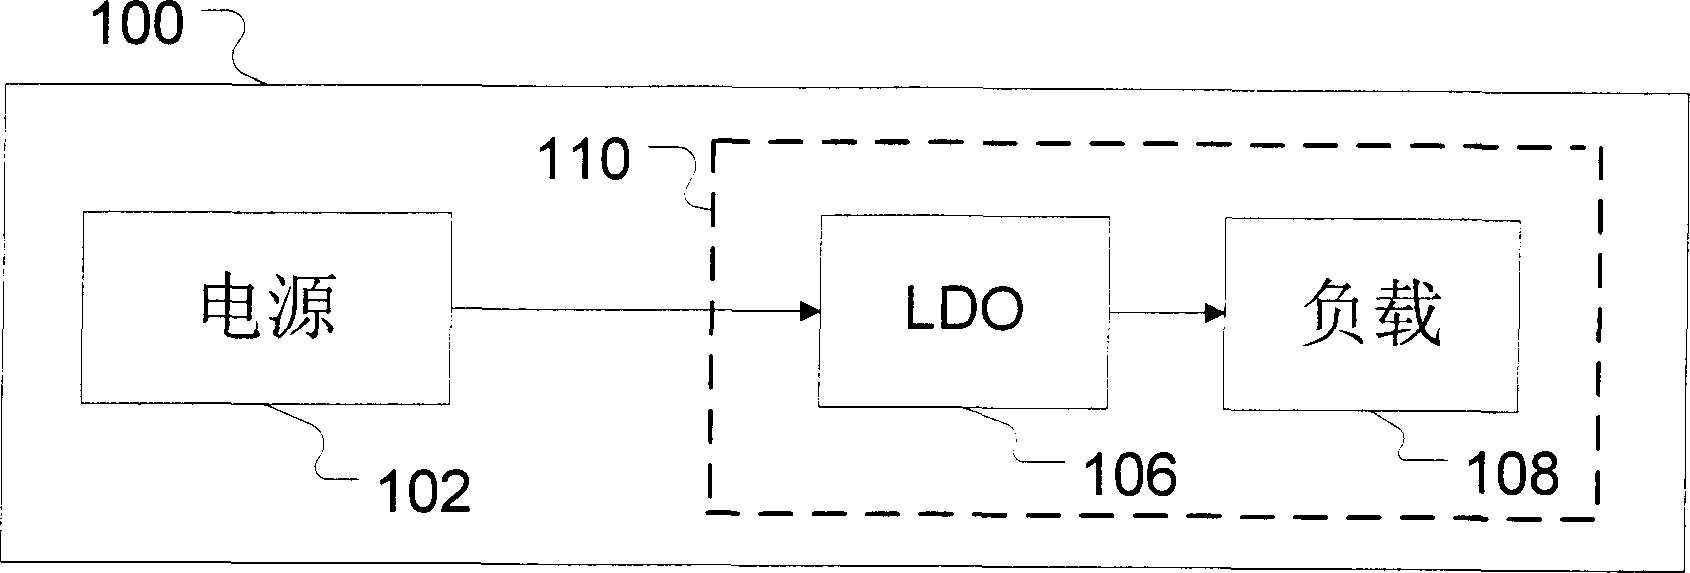 Low dropout voltage regulator